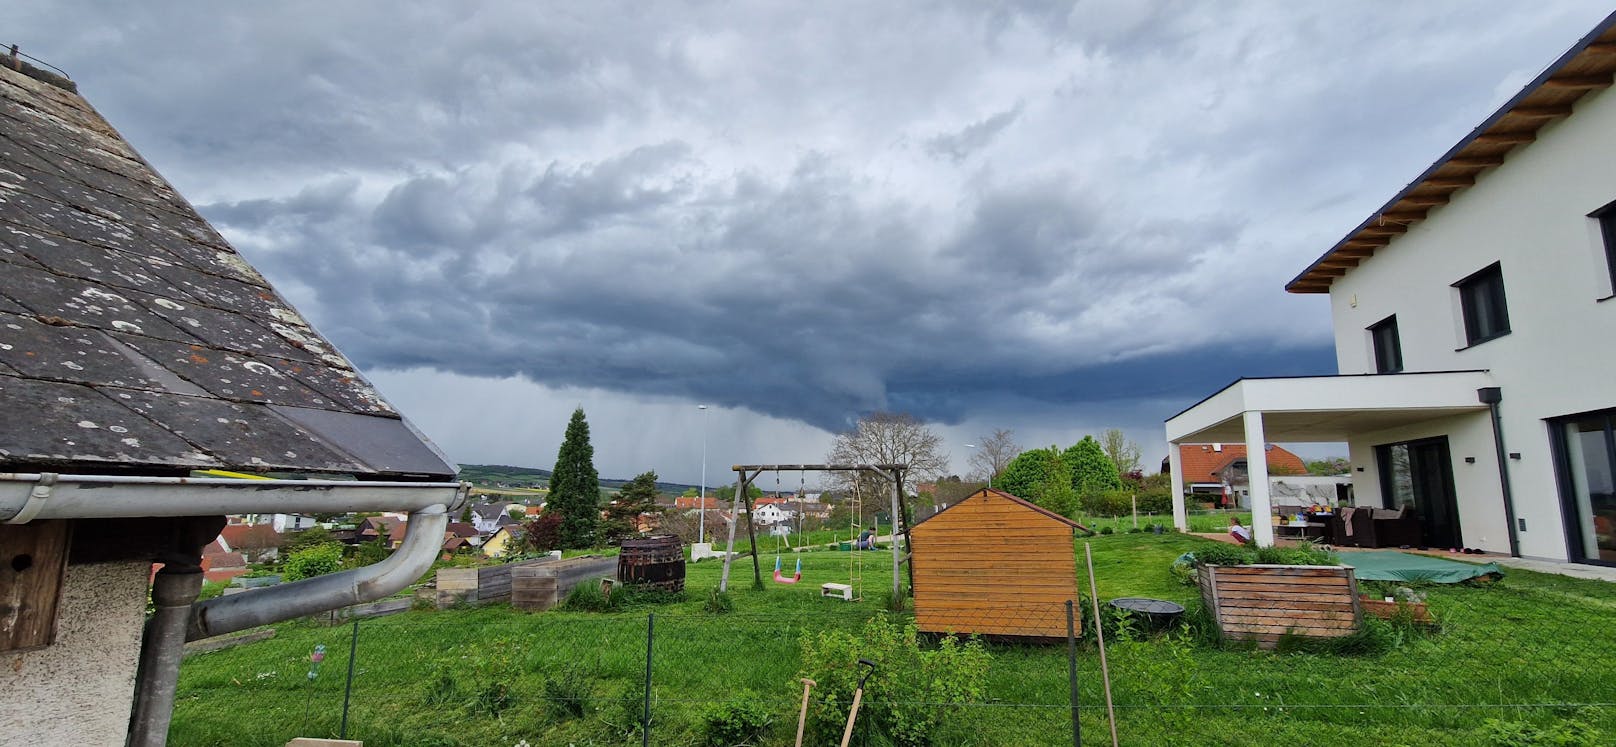 Marco berichtet über die Tornado-Sichtung aus Großweikersdorf